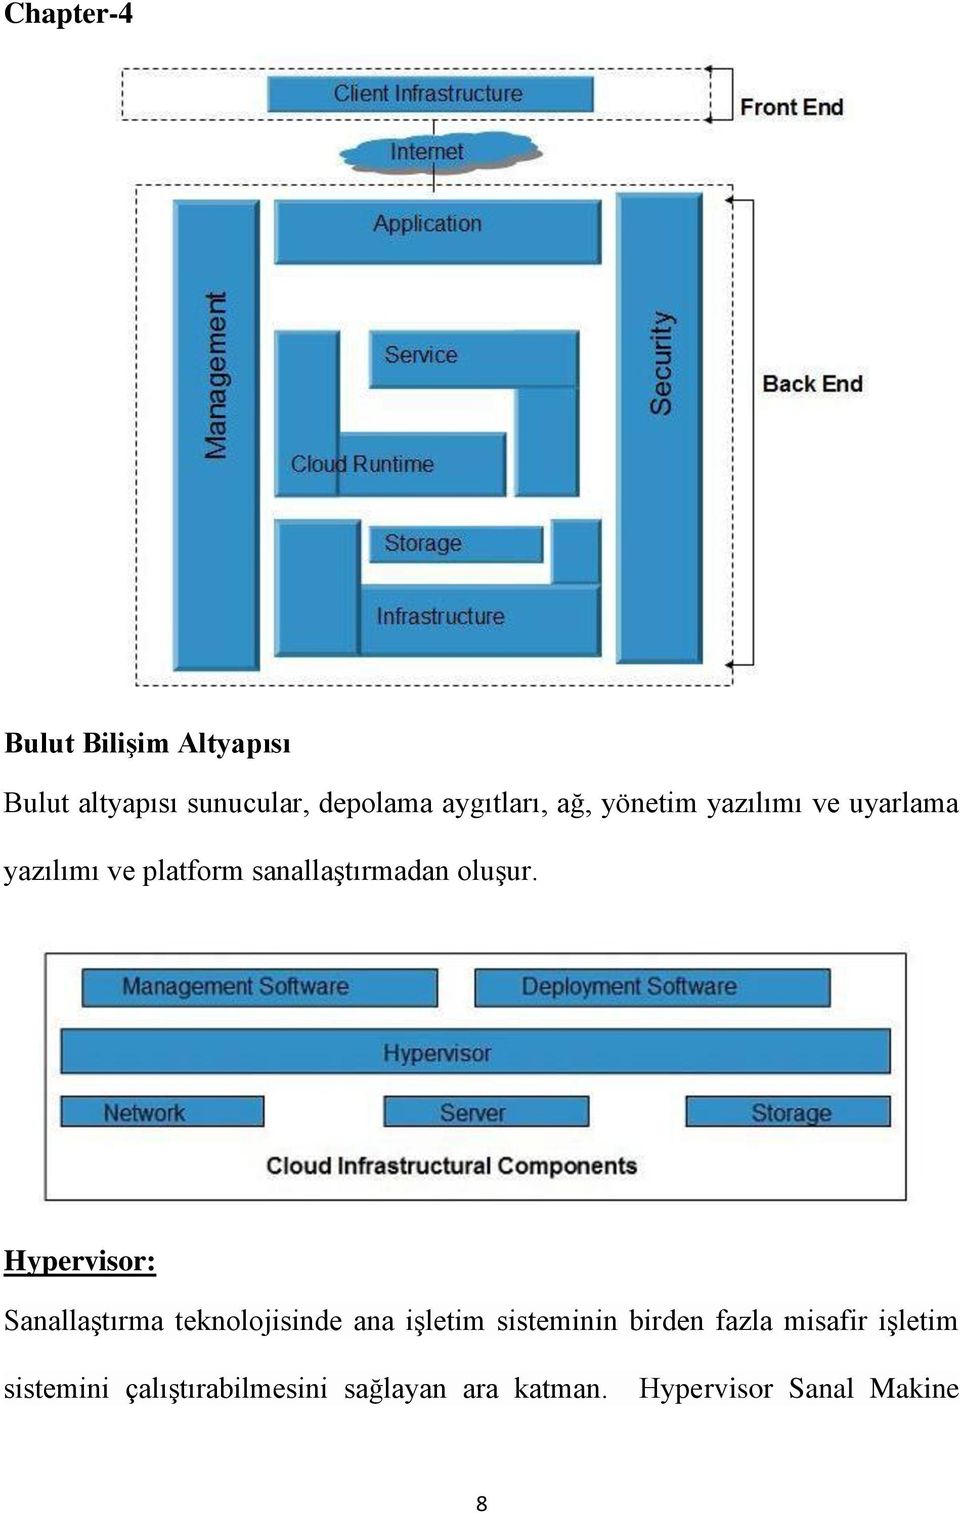 Hypervisor: Sanallaştırma teknolojisinde ana işletim sisteminin birden fazla